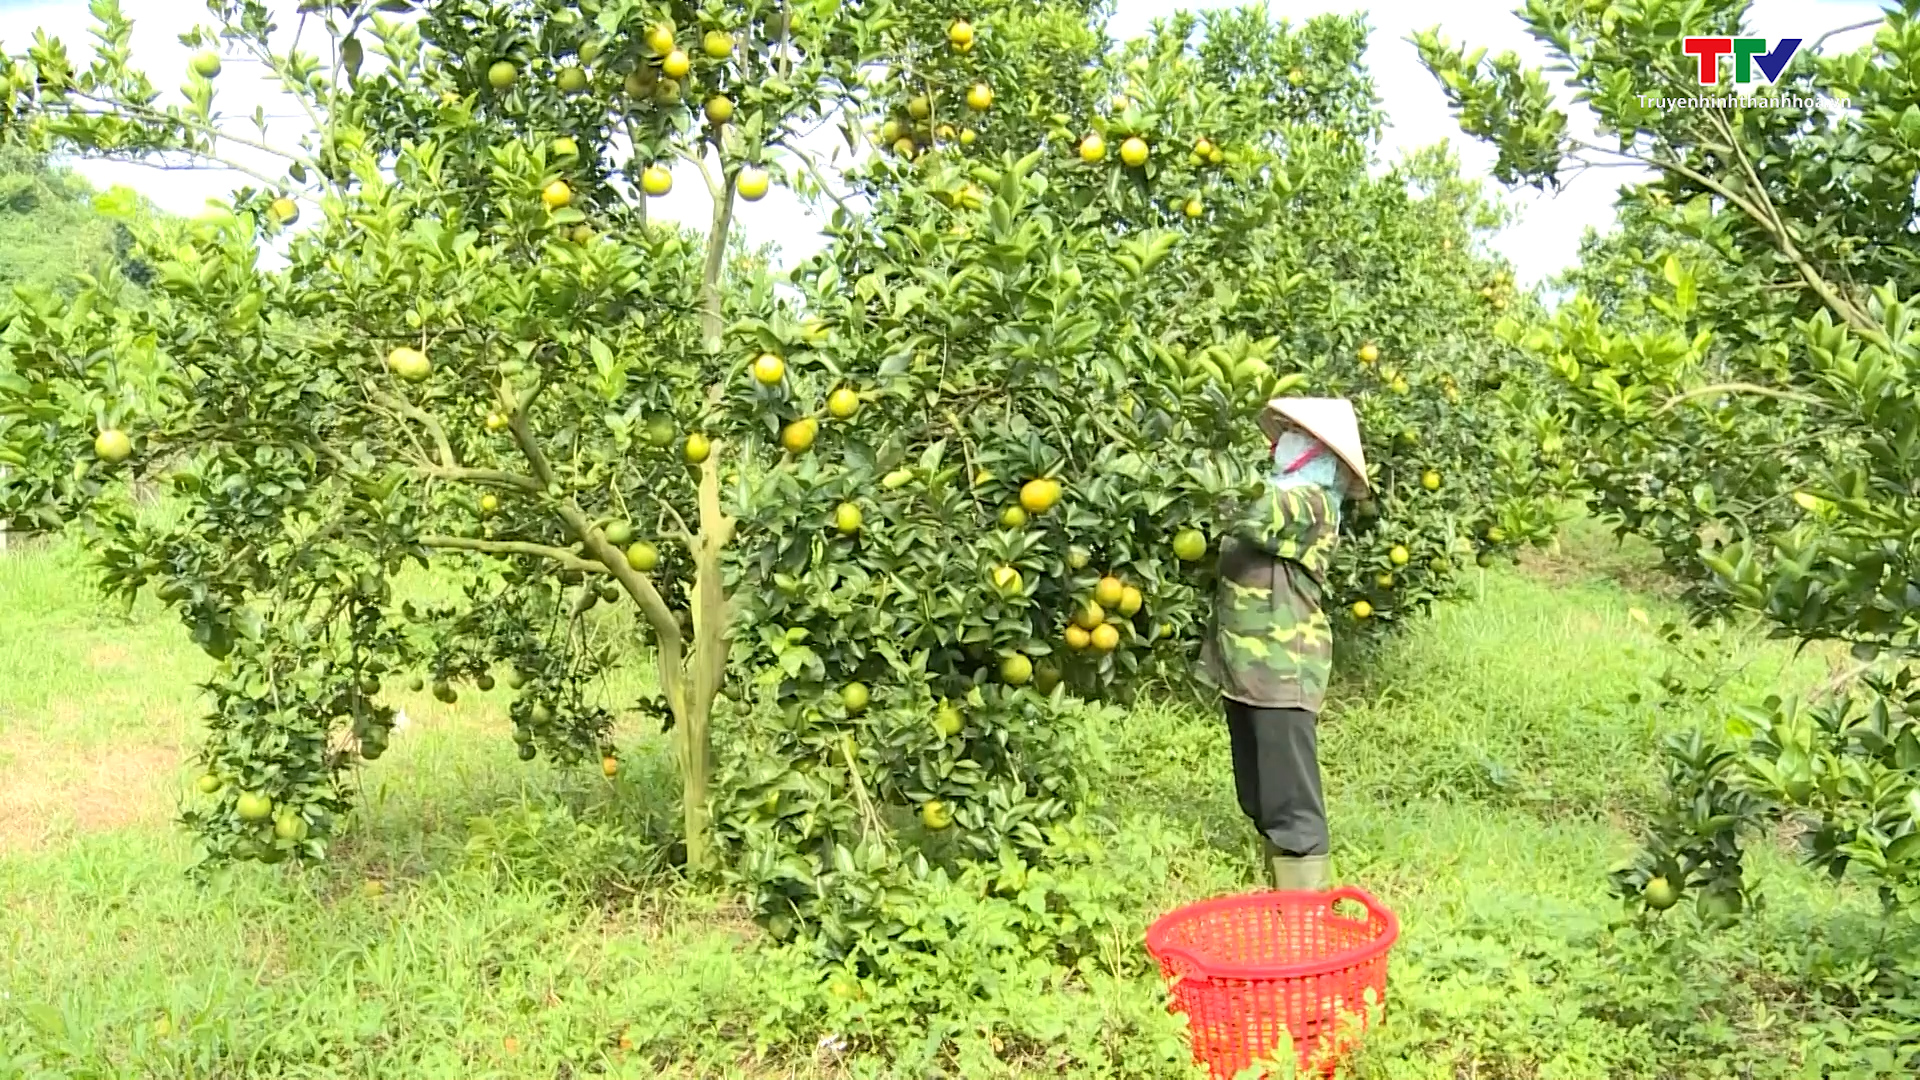 Thanh Hóa phát triển trồng cây ăn quả theo tiêu chuẩn VietGAP - Ảnh 2.